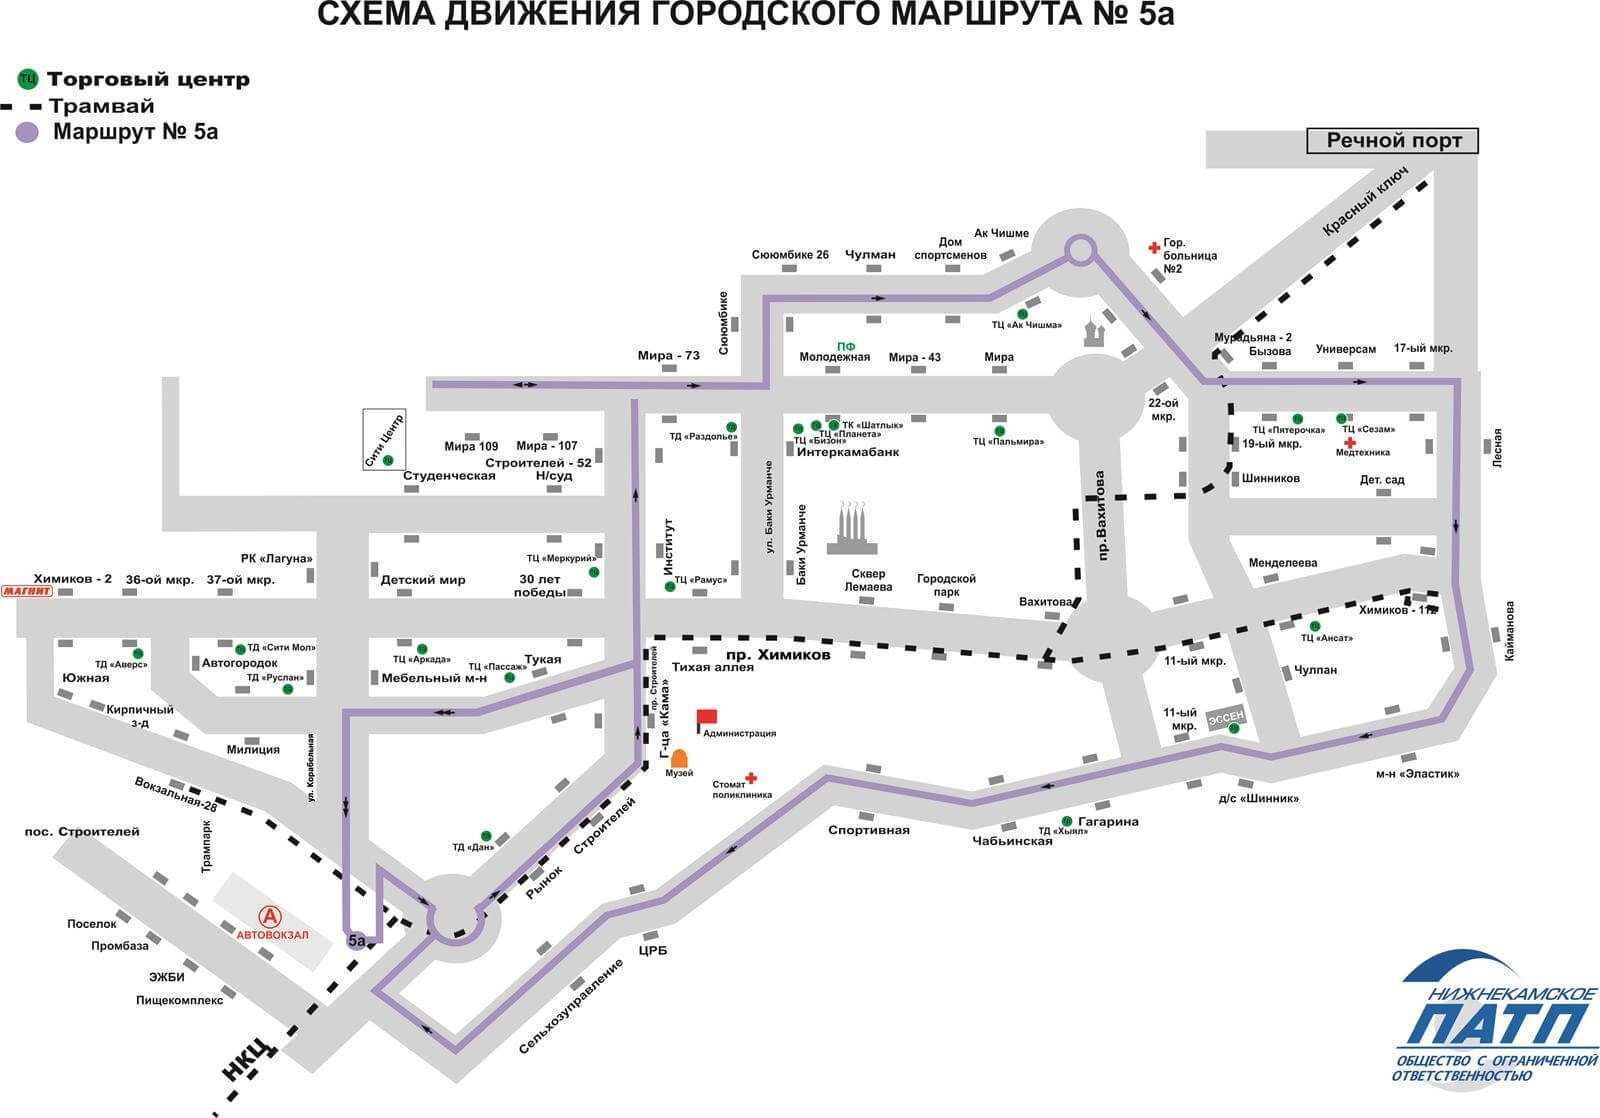 НПАТП маршруты схема 5а маршрута 14.12.2016